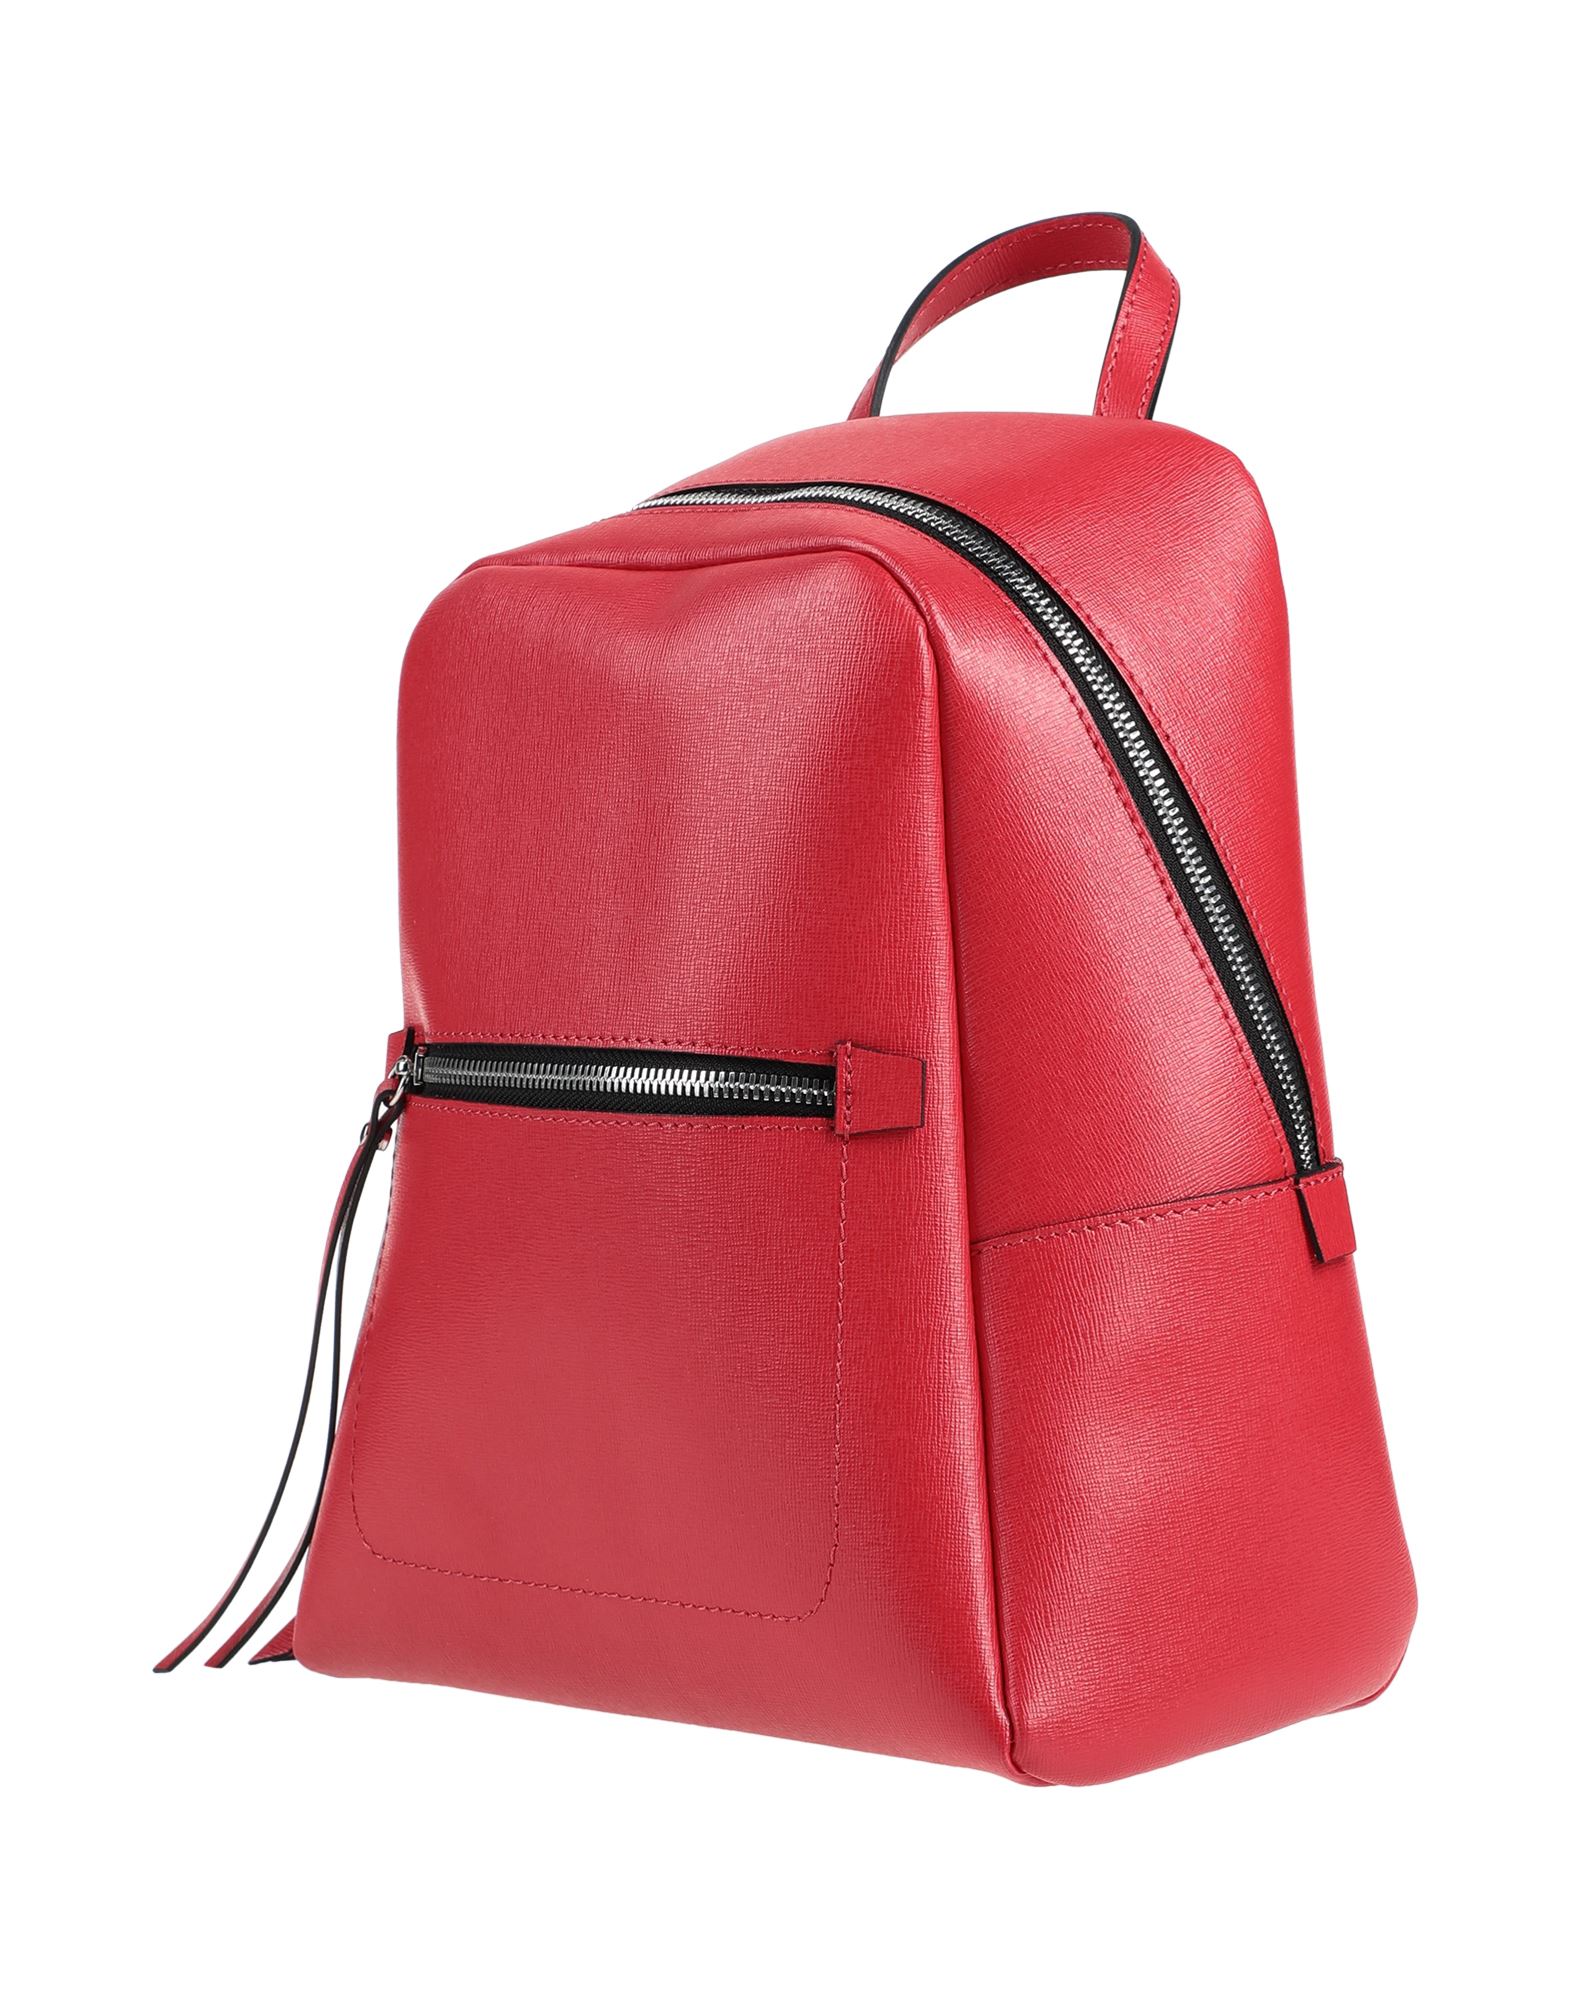 Gianni Chiarini Backpacks In Red